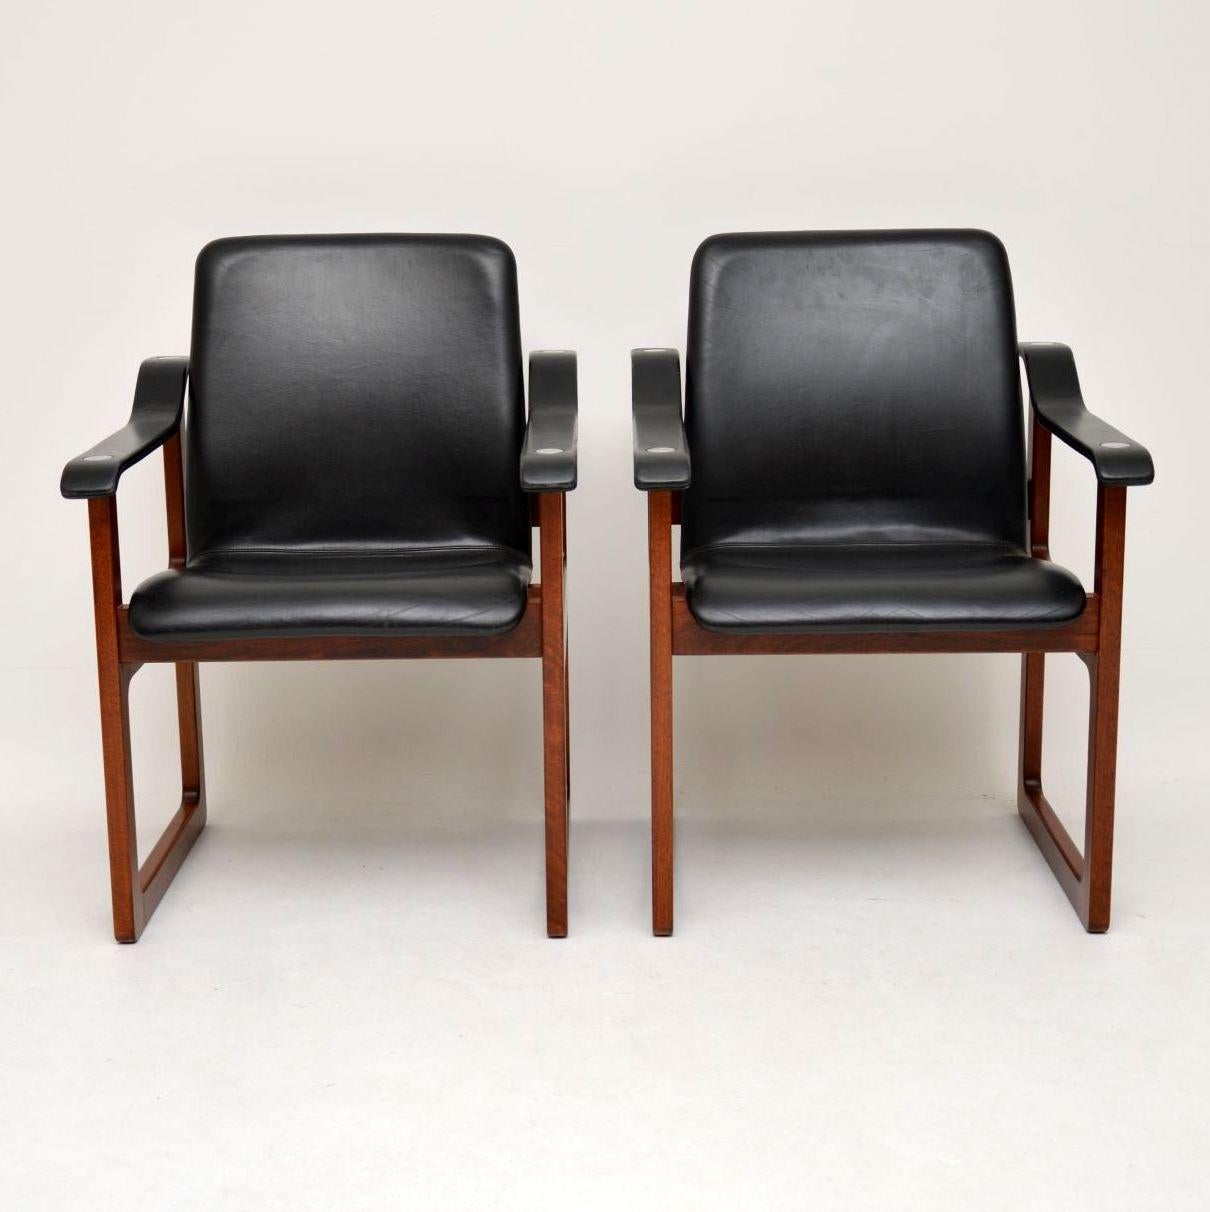 Une paire de fauteuils danois vintage absolument stupéfiante et très rare en bois massif avec un revêtement en cuir noir et des embellissements chromés sur les bras supérieurs. Ils ont été fabriqués par Dyrlund, vers les années 1970, nous n'avons